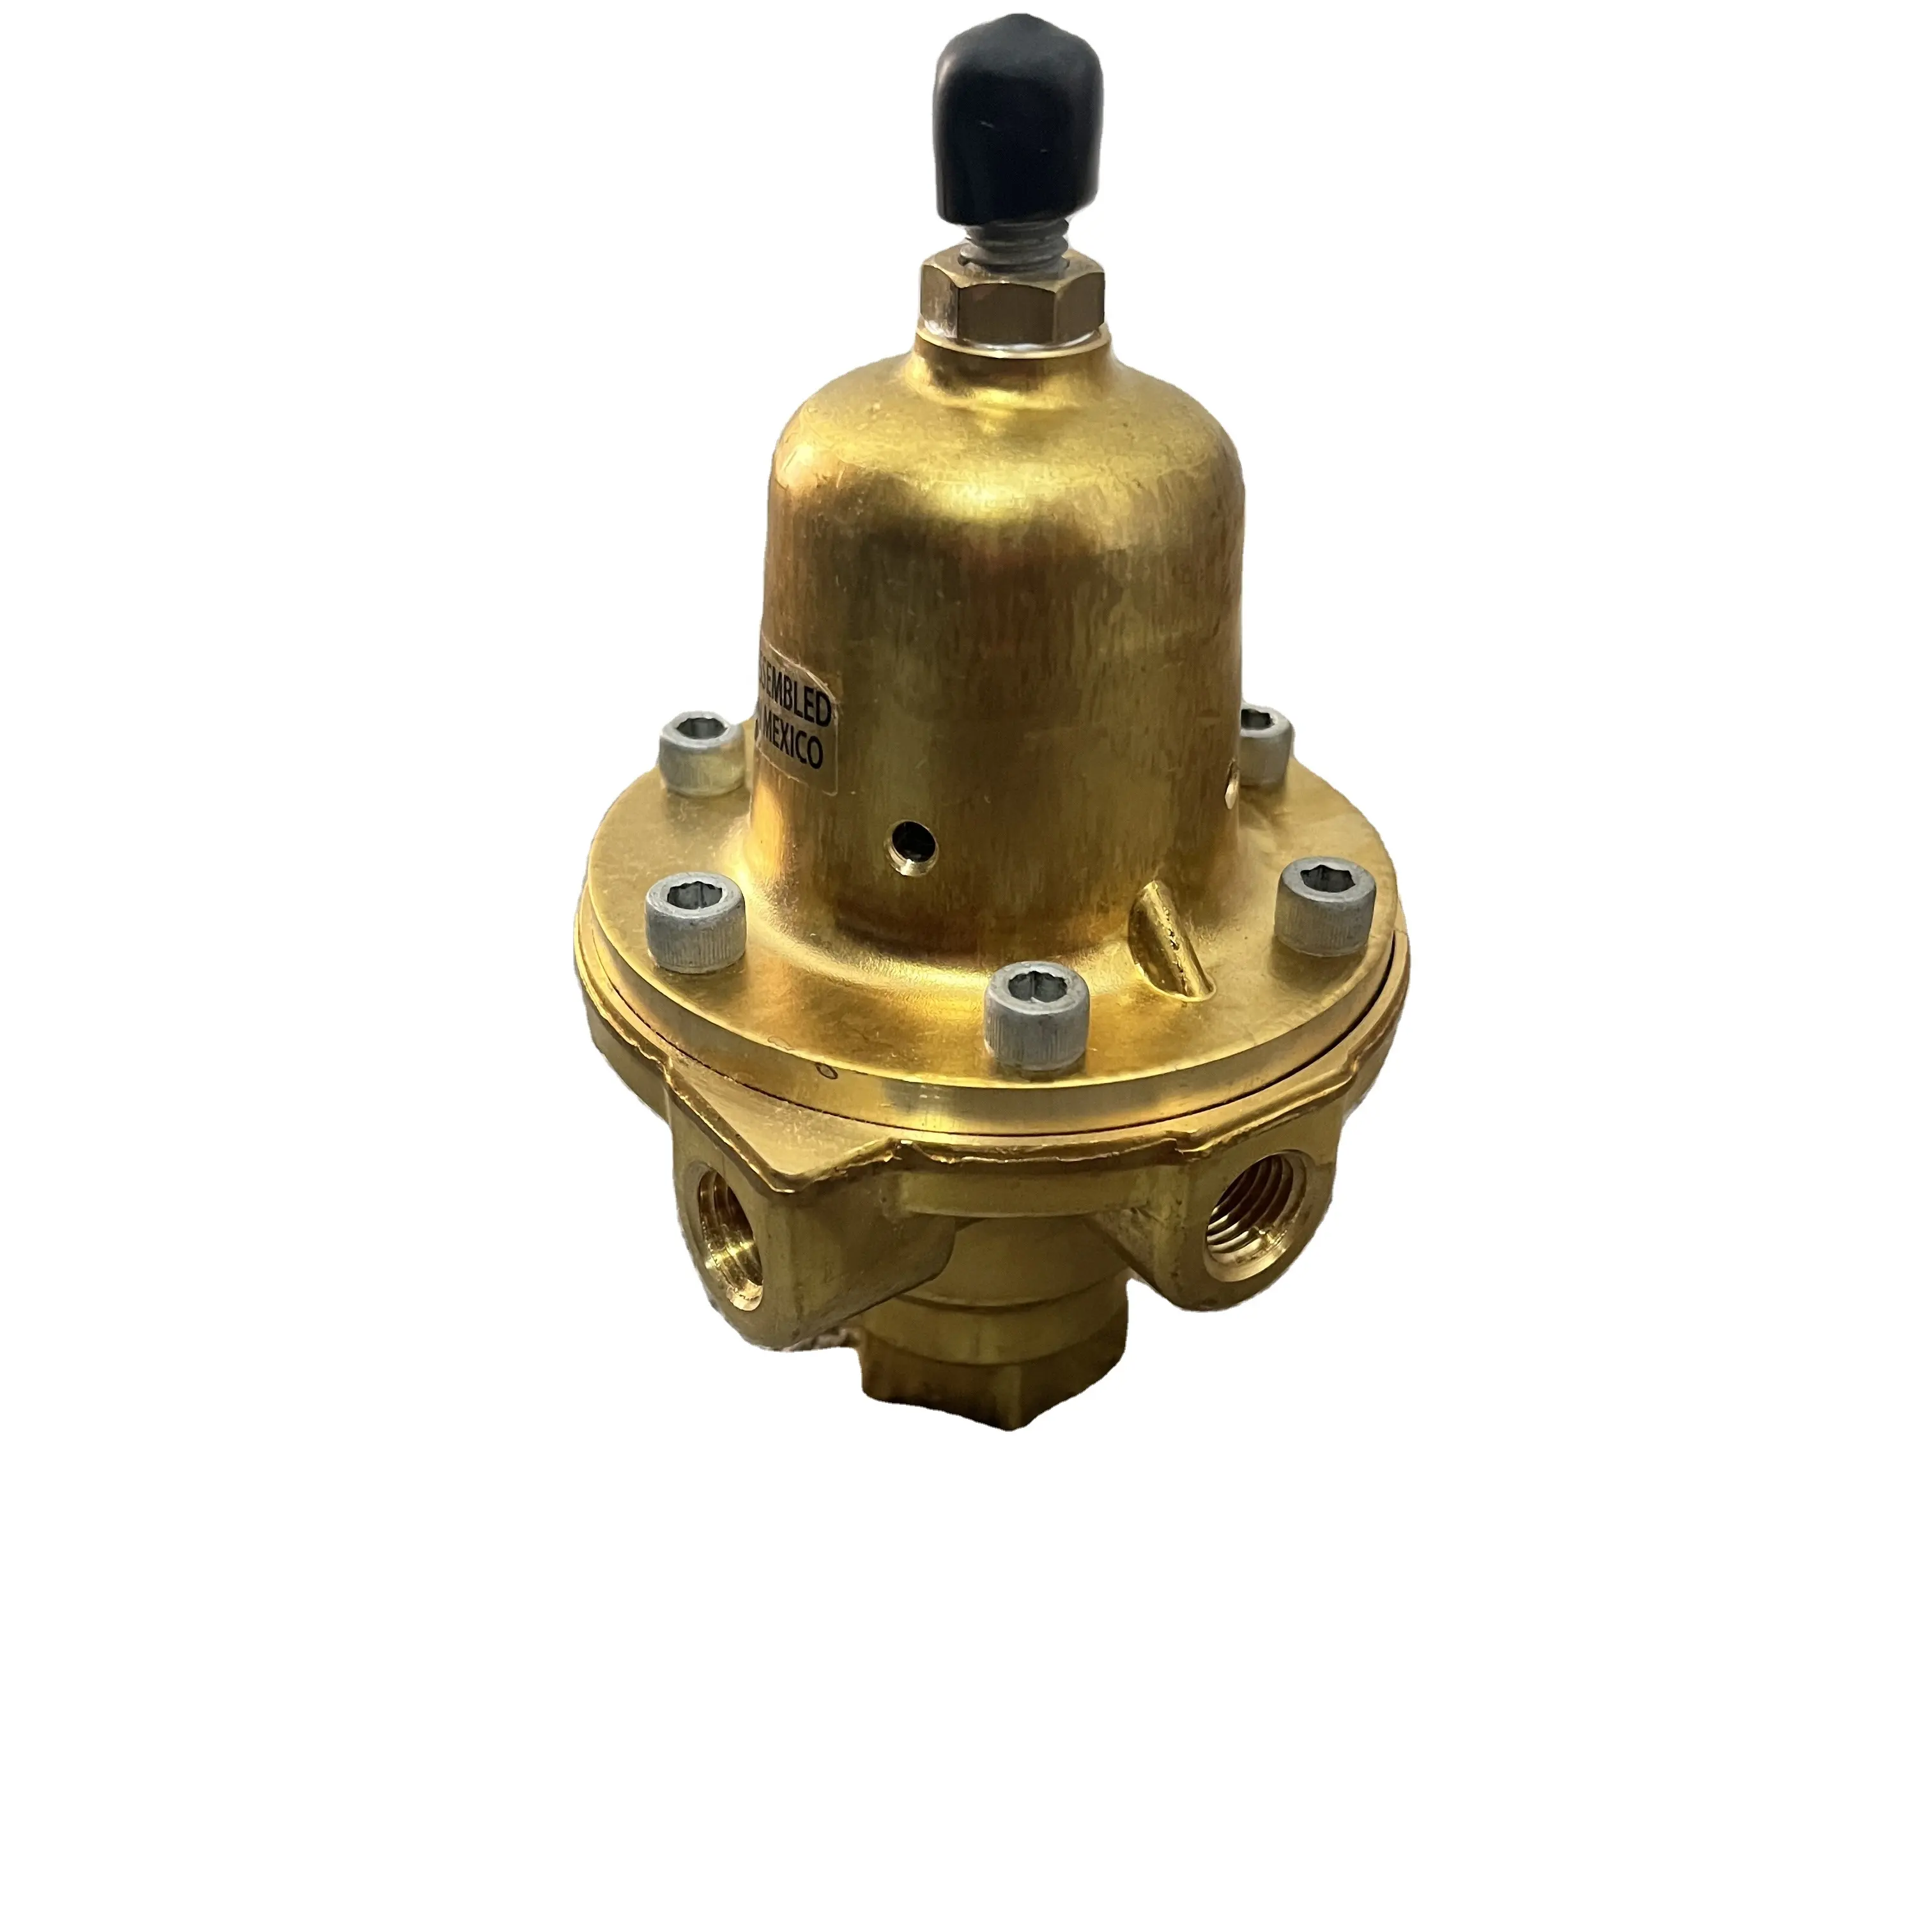 El regulador de reducción de presión original Fisher tipo 1301F-2 es autooperado, reguladores de alta presión utilizados donde la alta presión